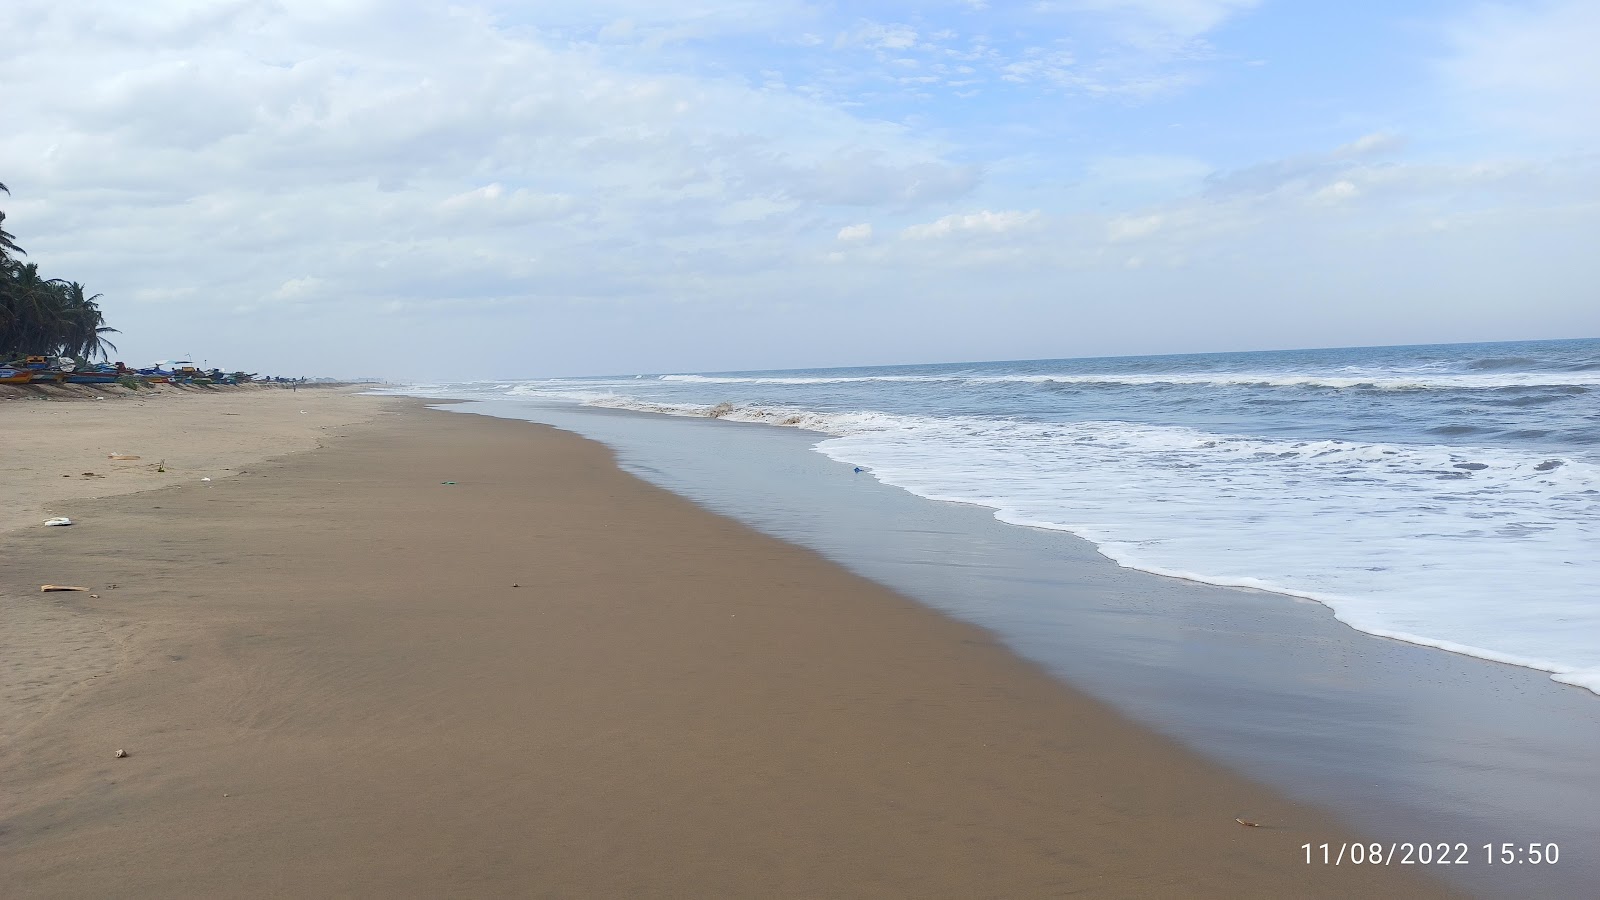 Foto de PCKM Beach com areia brilhante superfície